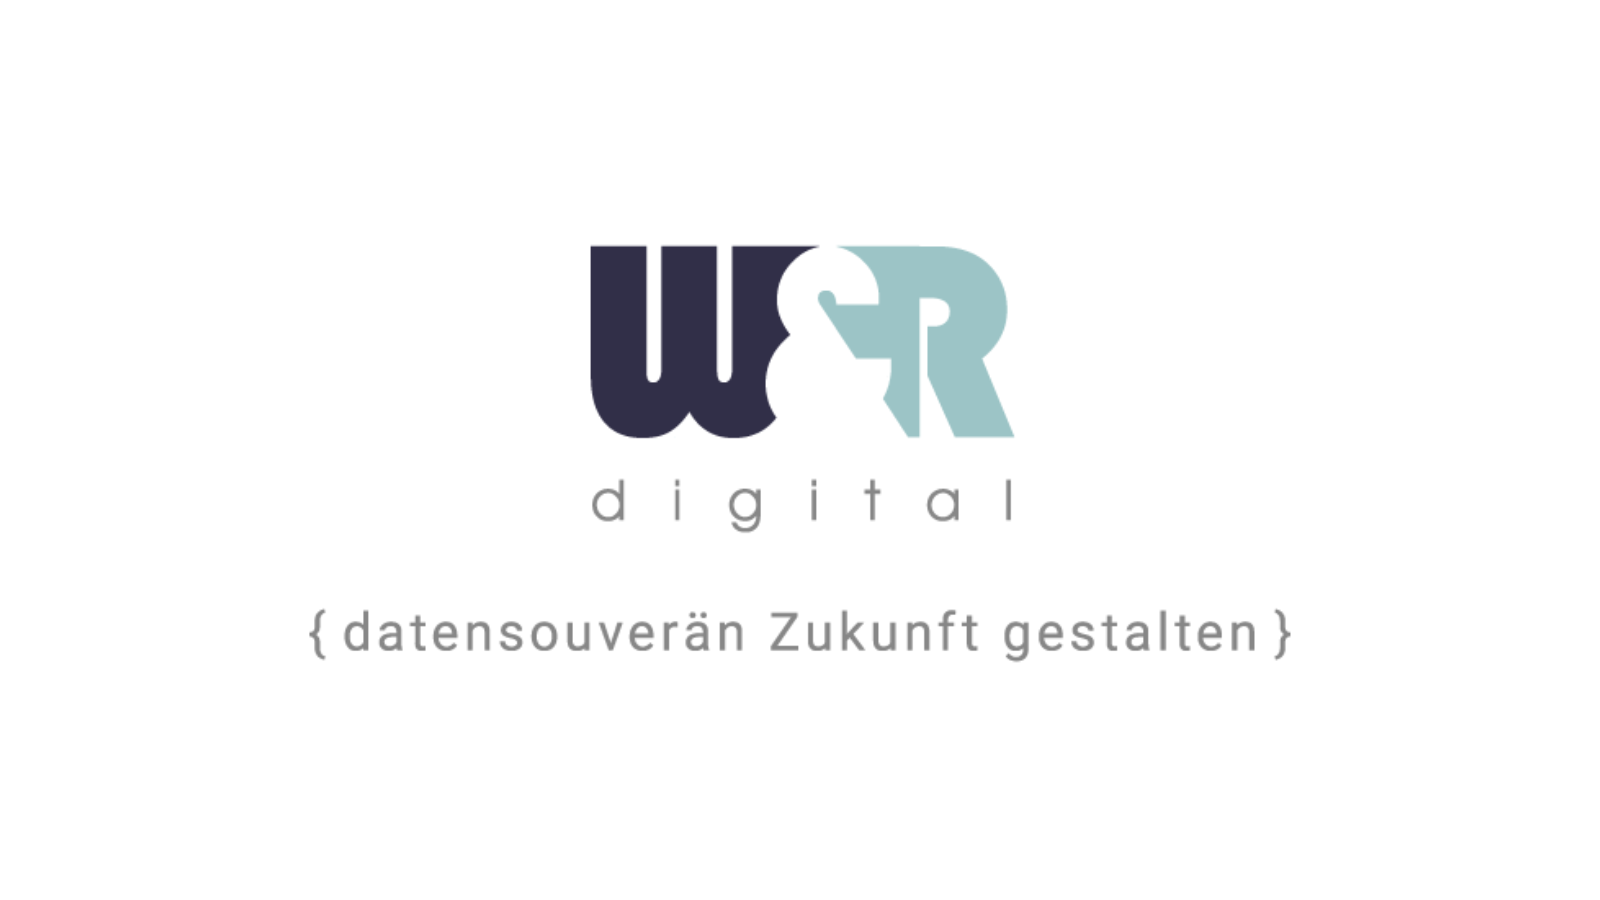 W&R digital